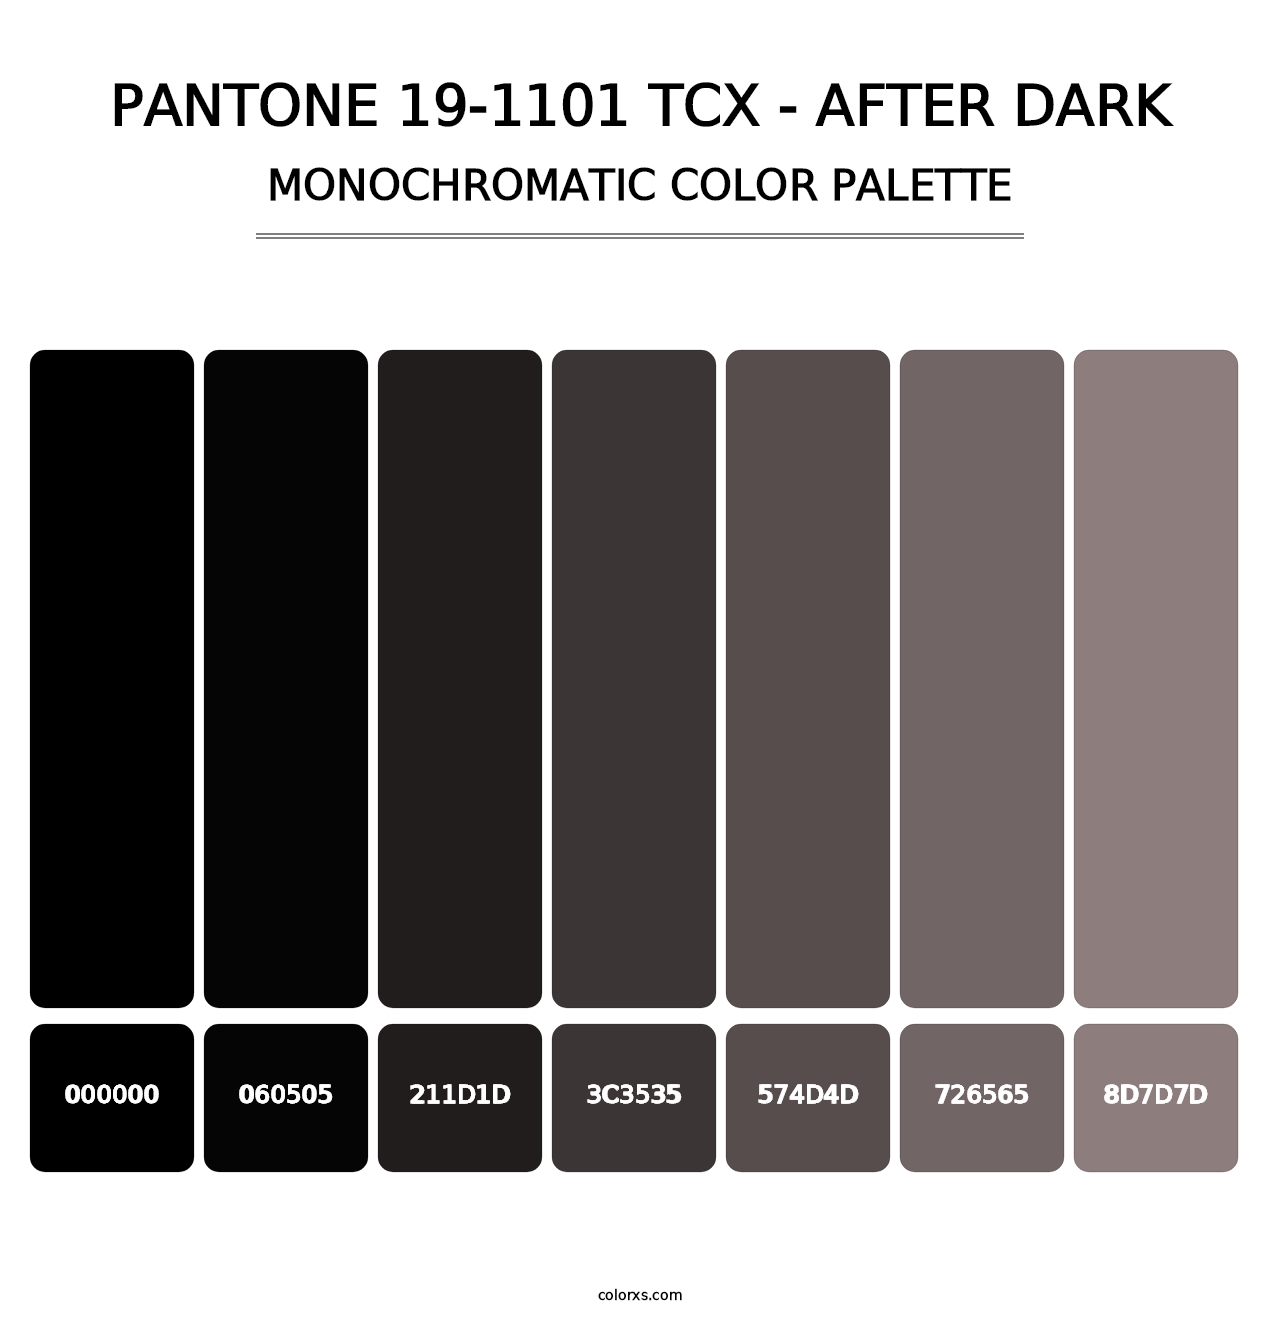 PANTONE 19-1101 TCX - After Dark - Monochromatic Color Palette